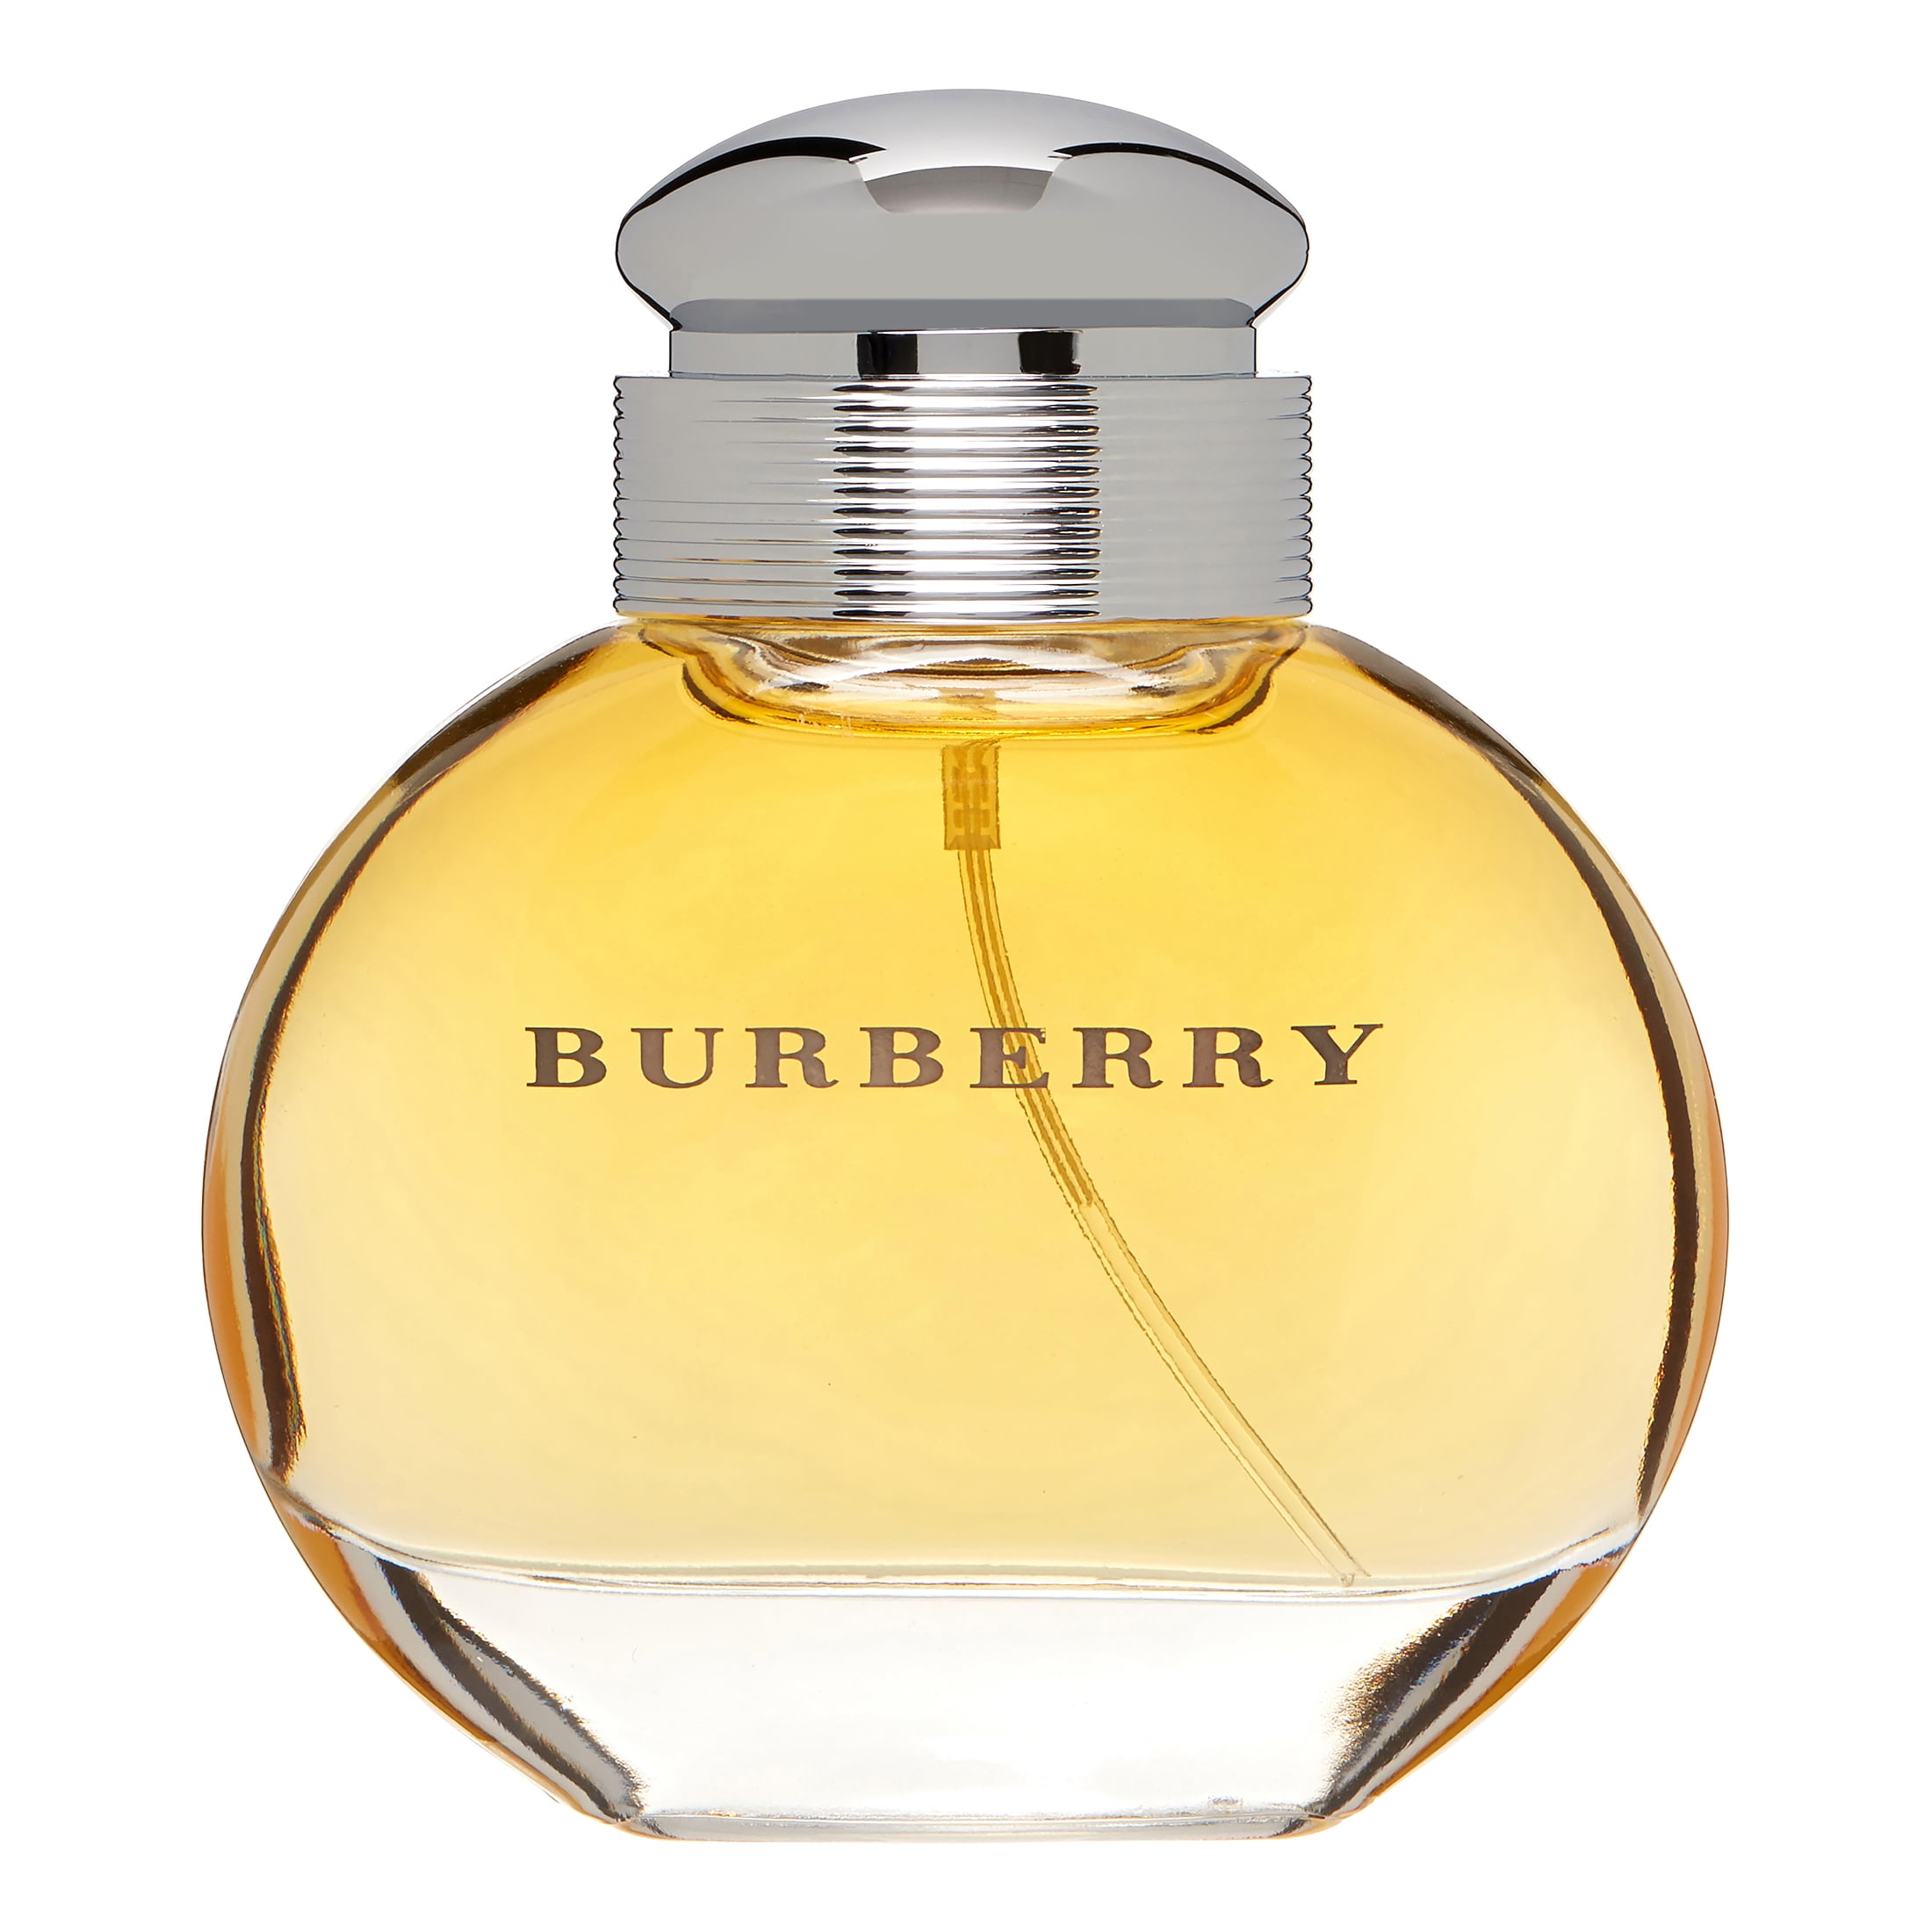 Burberry Eau de Parfum, Women, Perfume oz for 1.7